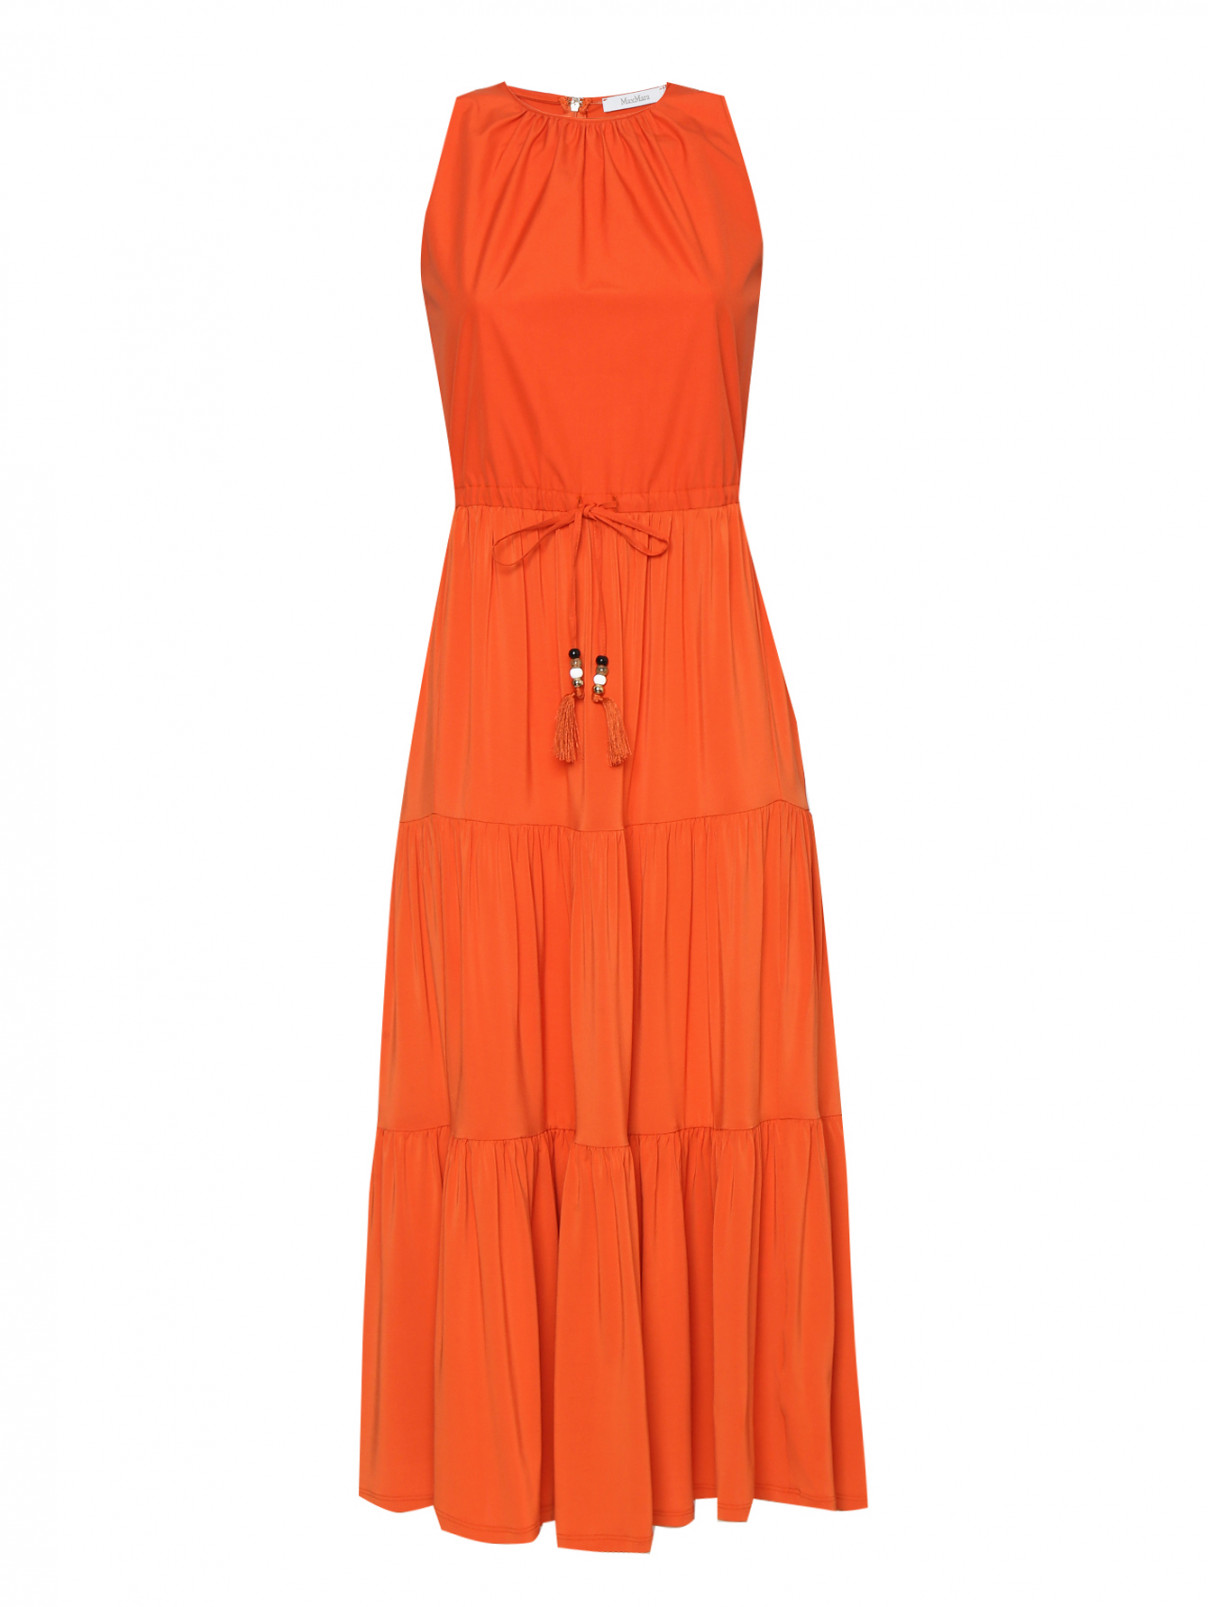 Платье из хлопка без рукавов Max Mara  –  Общий вид  – Цвет:  Оранжевый